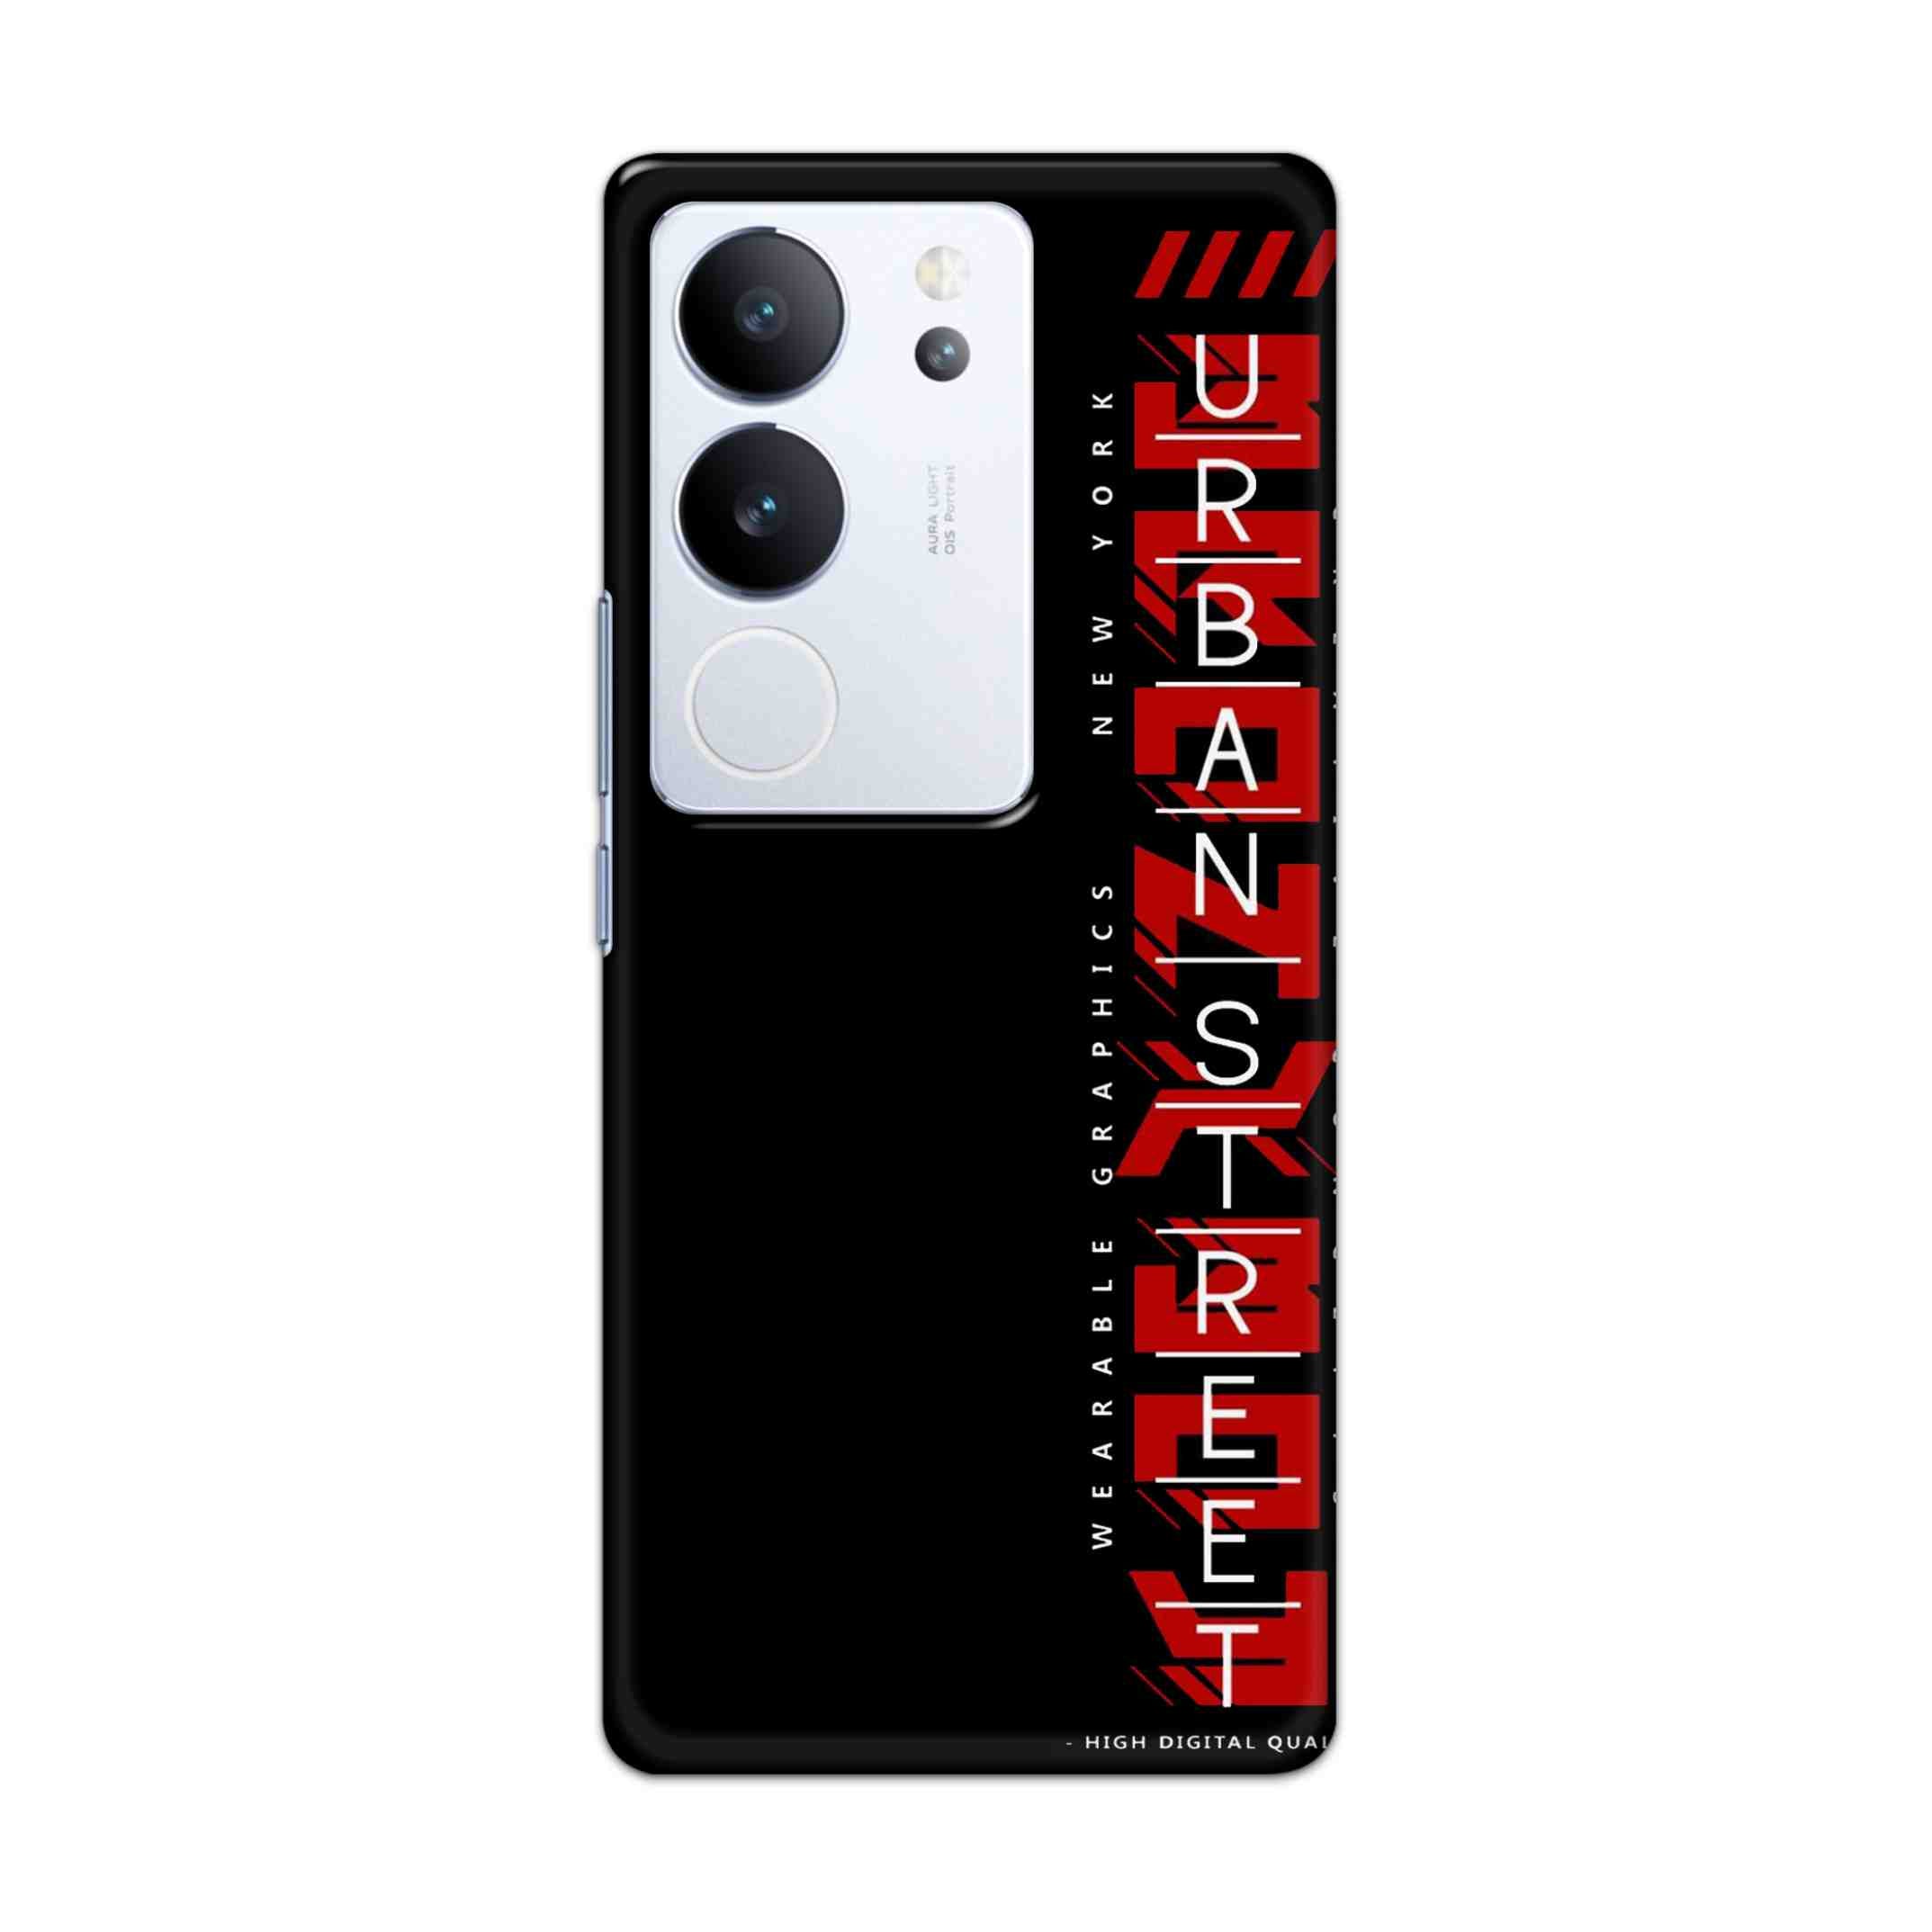 Buy Urban Street Hard Back Mobile Phone Case/Cover For Vivo V29 / V29 Pro Online